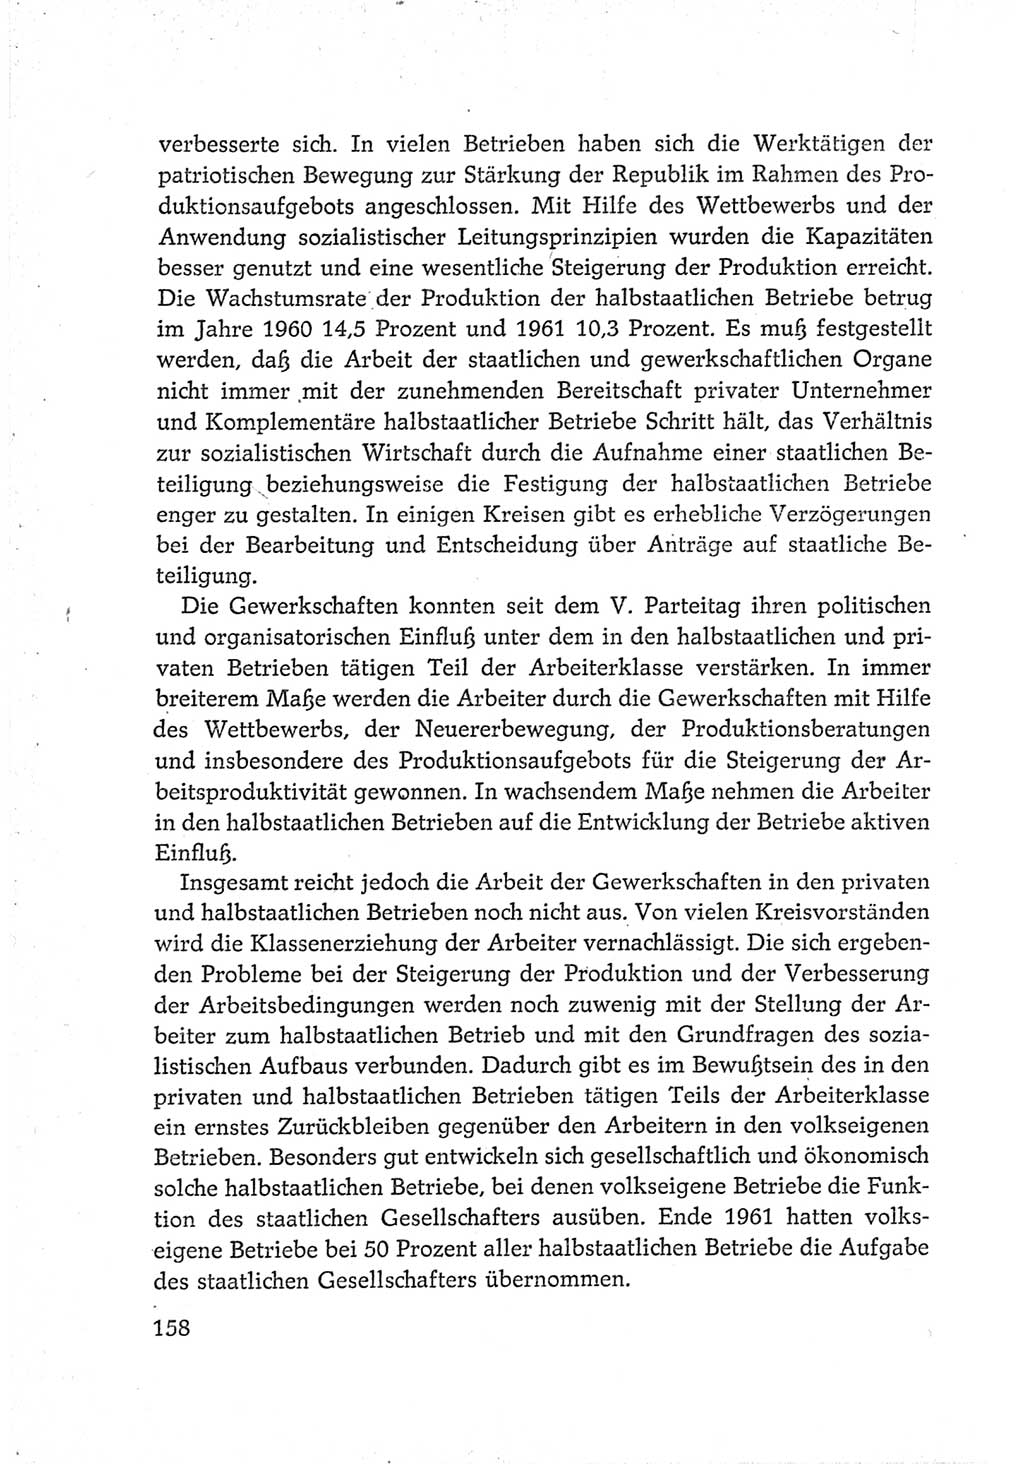 Protokoll der Verhandlungen des Ⅵ. Parteitages der Sozialistischen Einheitspartei Deutschlands (SED) [Deutsche Demokratische Republik (DDR)] 1963, Band Ⅳ, Seite 158 (Prot. Verh. Ⅵ. PT SED DDR 1963, Bd. Ⅳ, S. 158)